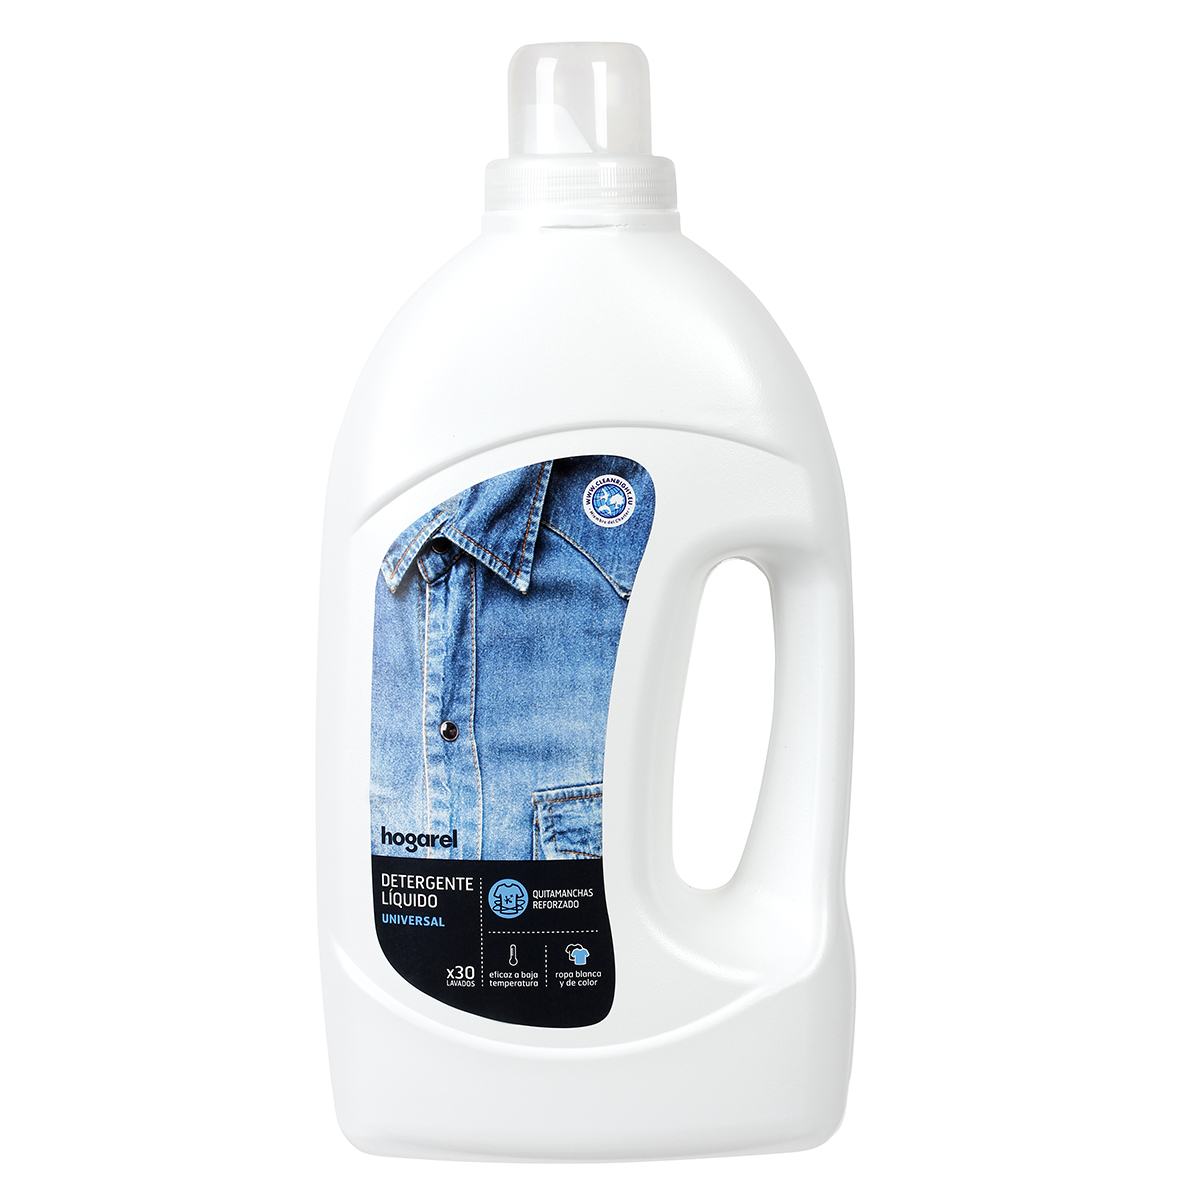 McCall's Airbrush Liquide Colorant Alimentaire Blanc - 30 ml (1 oz) 